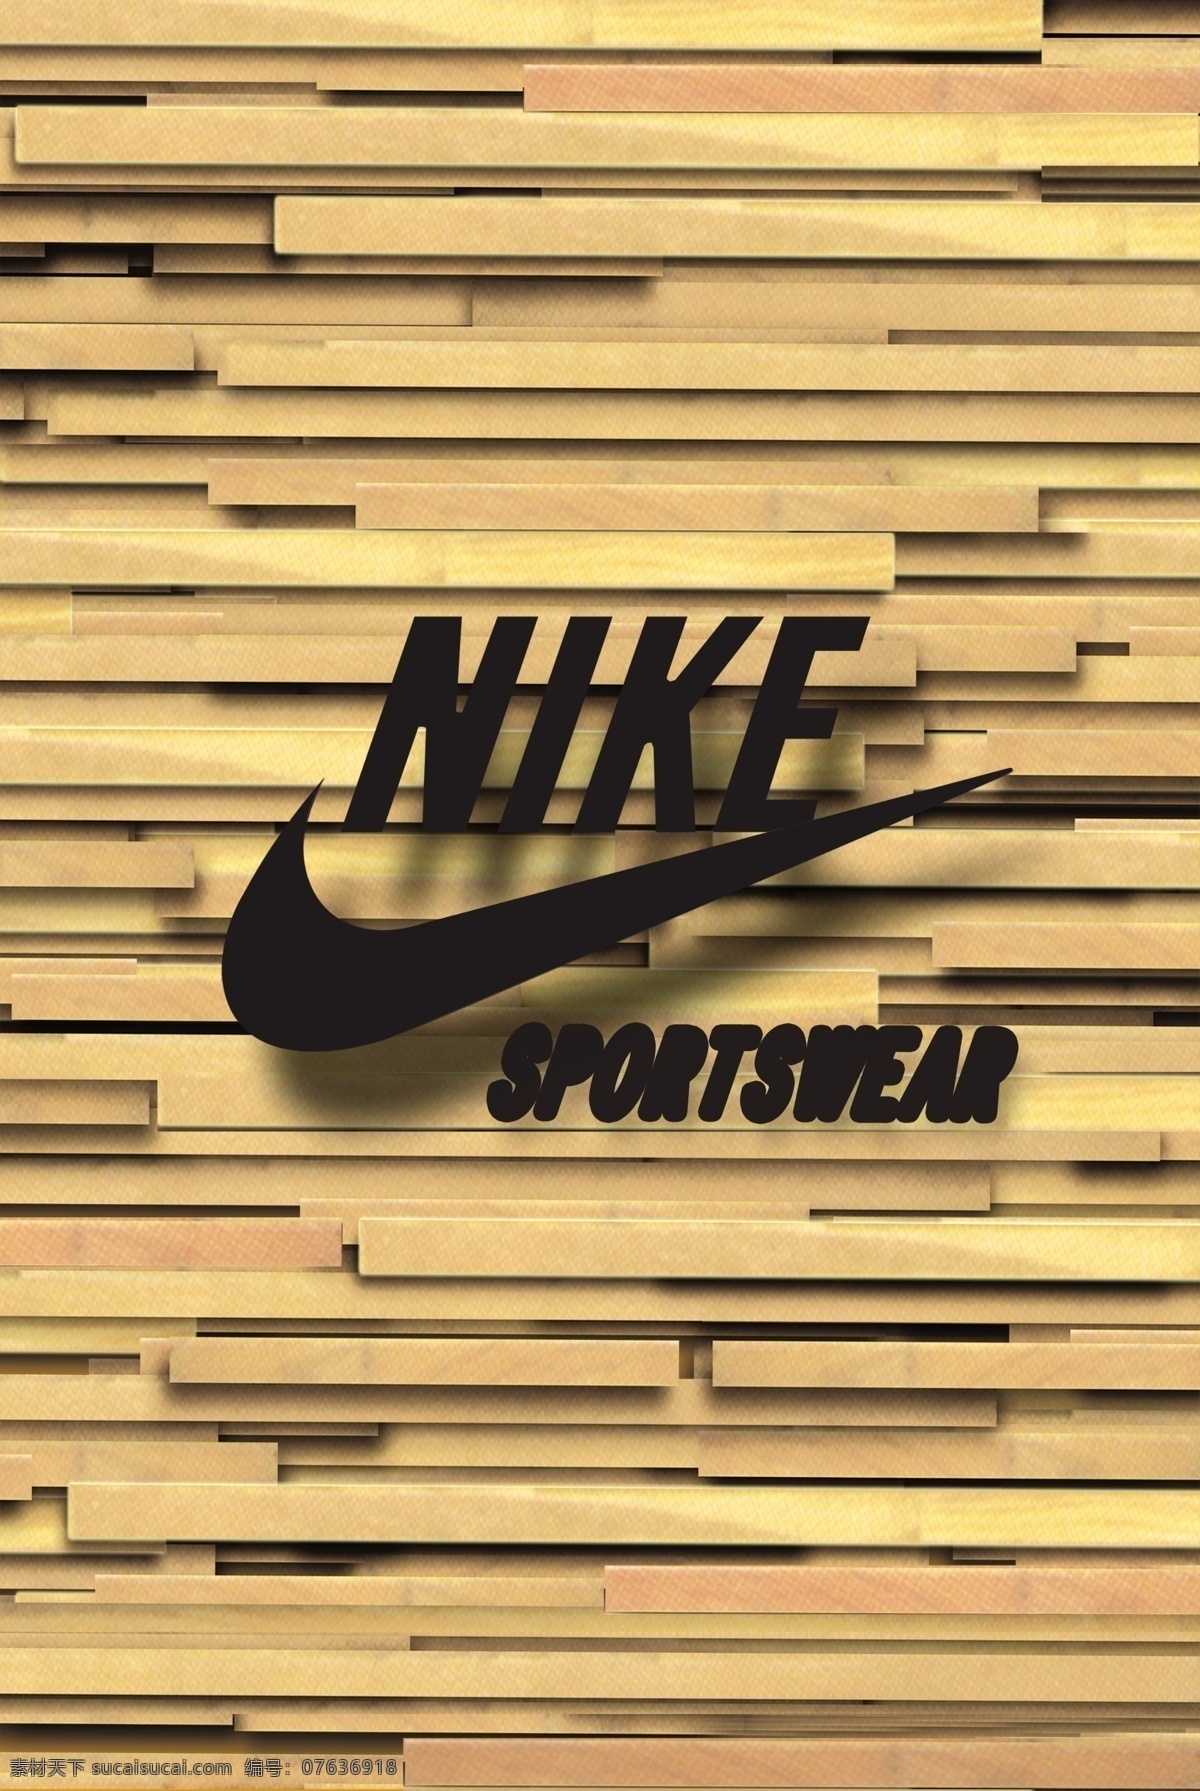 耐克 耐克标志 nike 体育 运动 体育品牌 木纹背景 漂亮背景 形象墙 背景墙 背景素材 分层 源文件